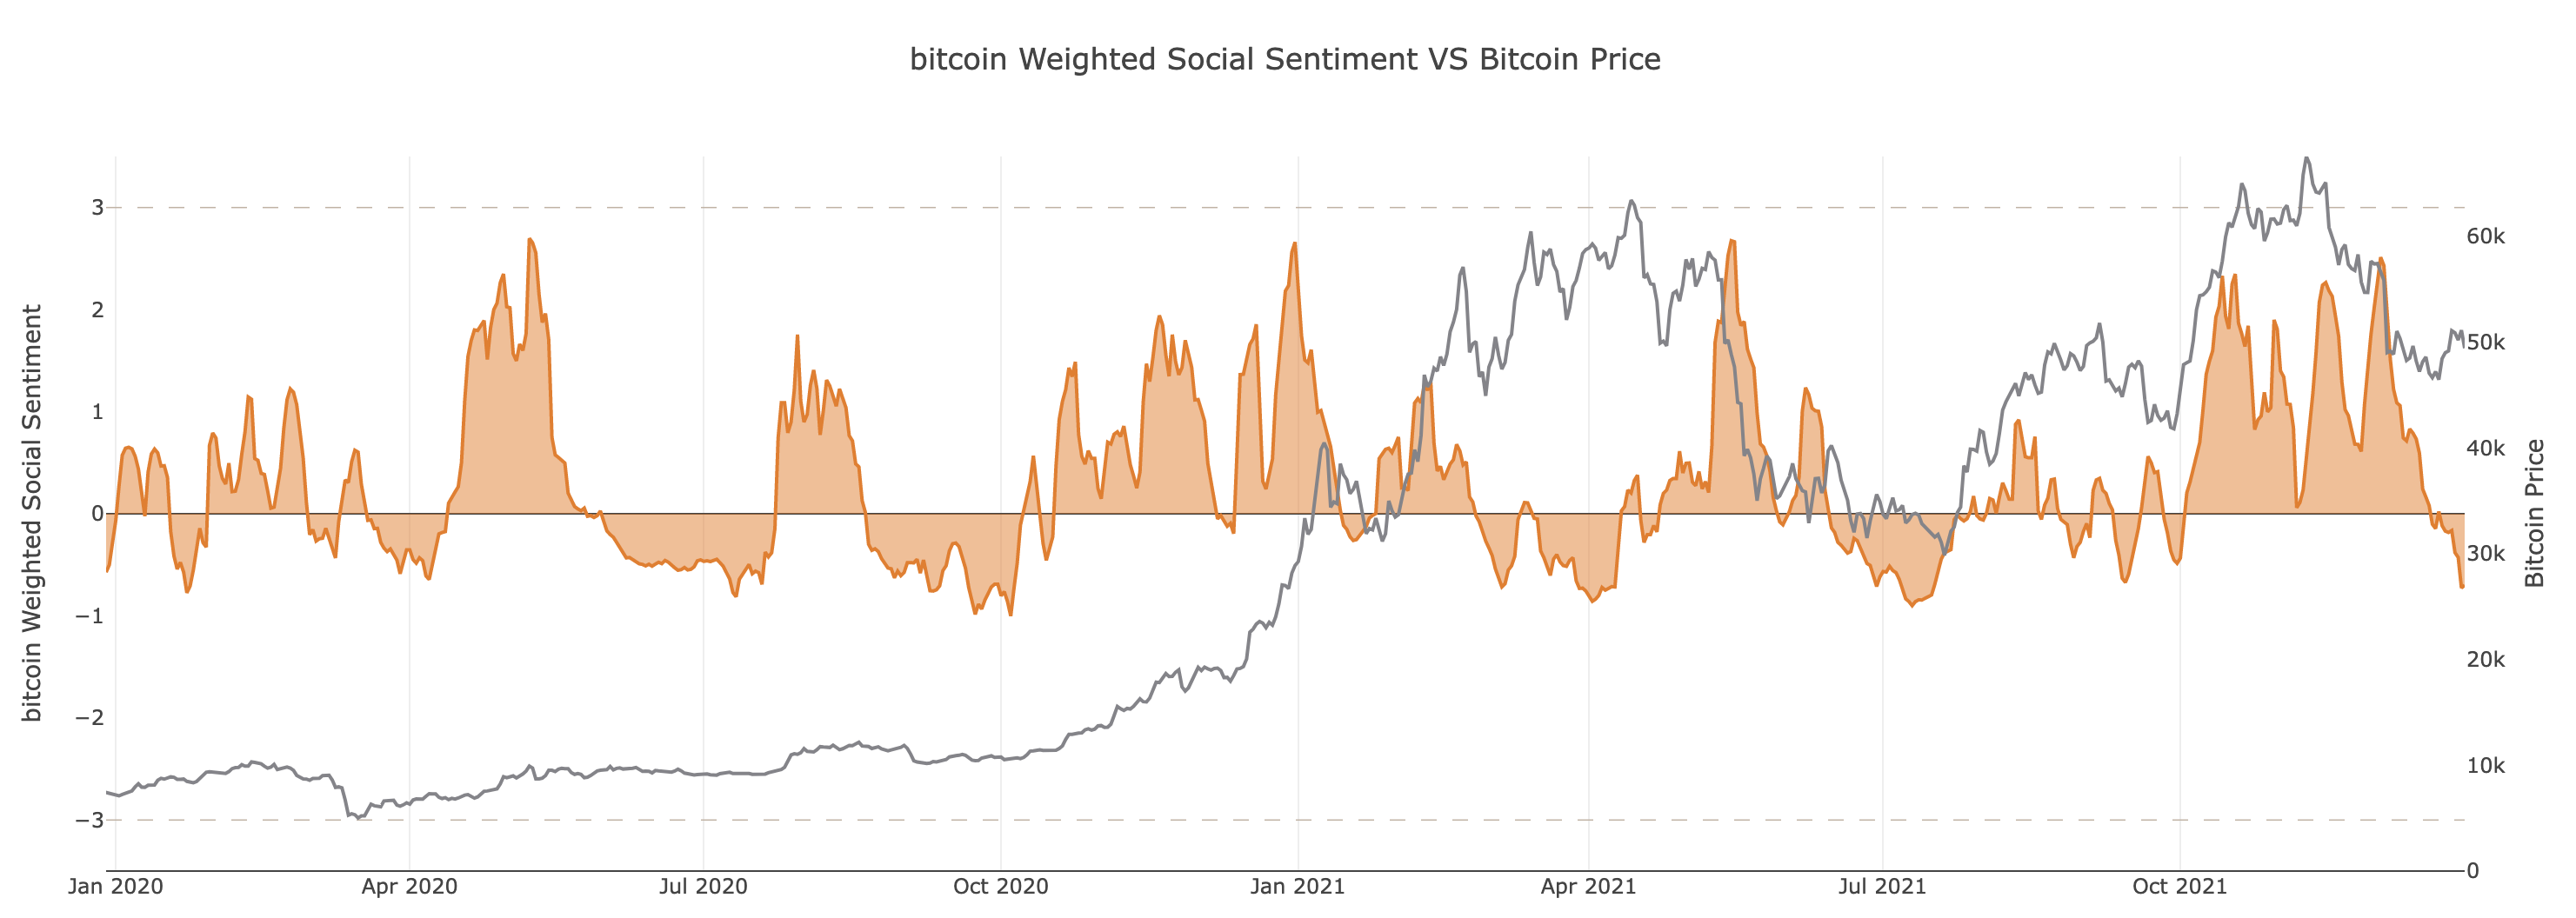 Un resumen de 2021 nos dice esto sobre la trayectoria del precio de Bitcoin